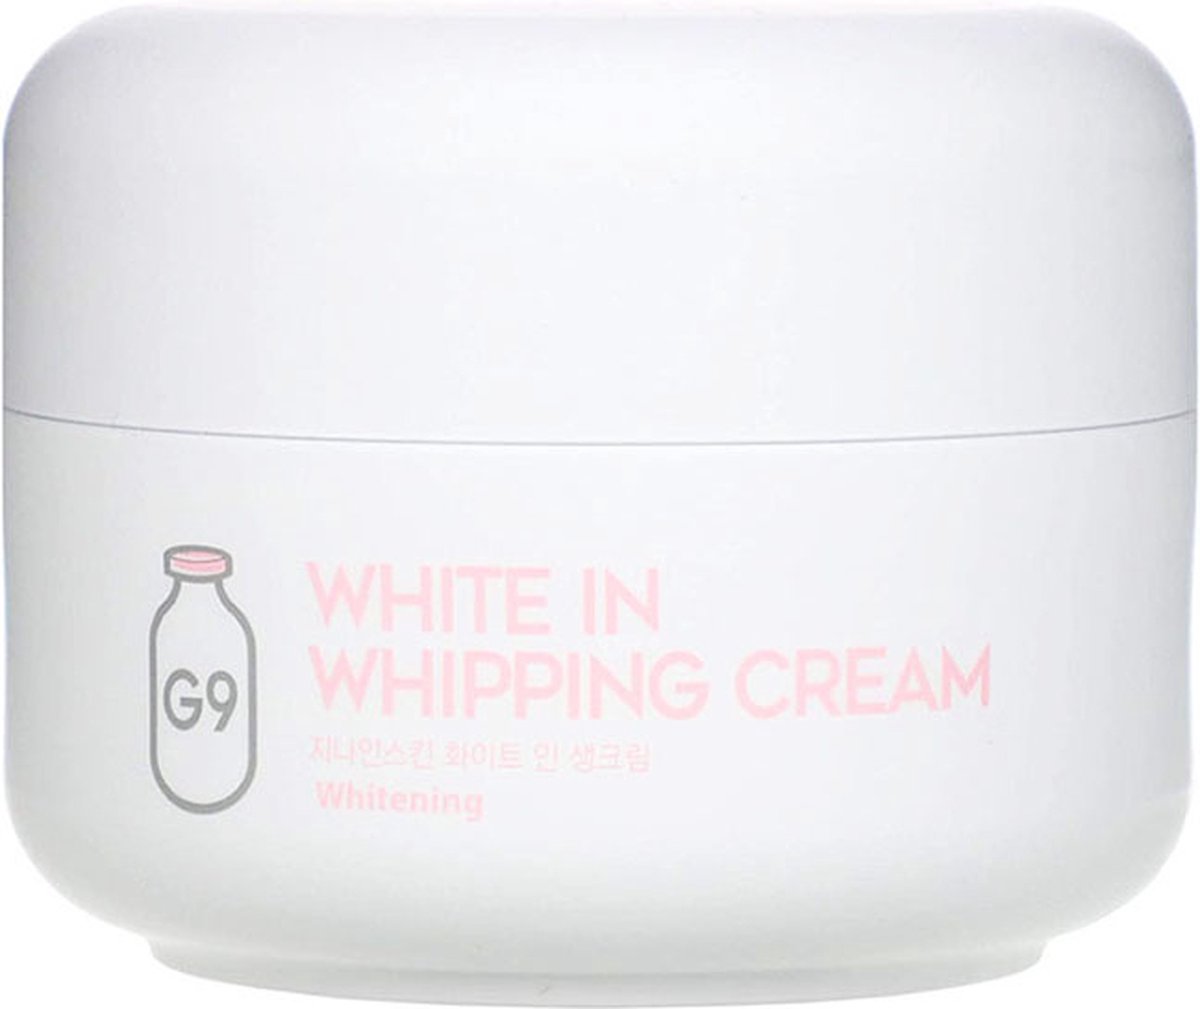 G9 Gezichtscrème - White in moisture cream